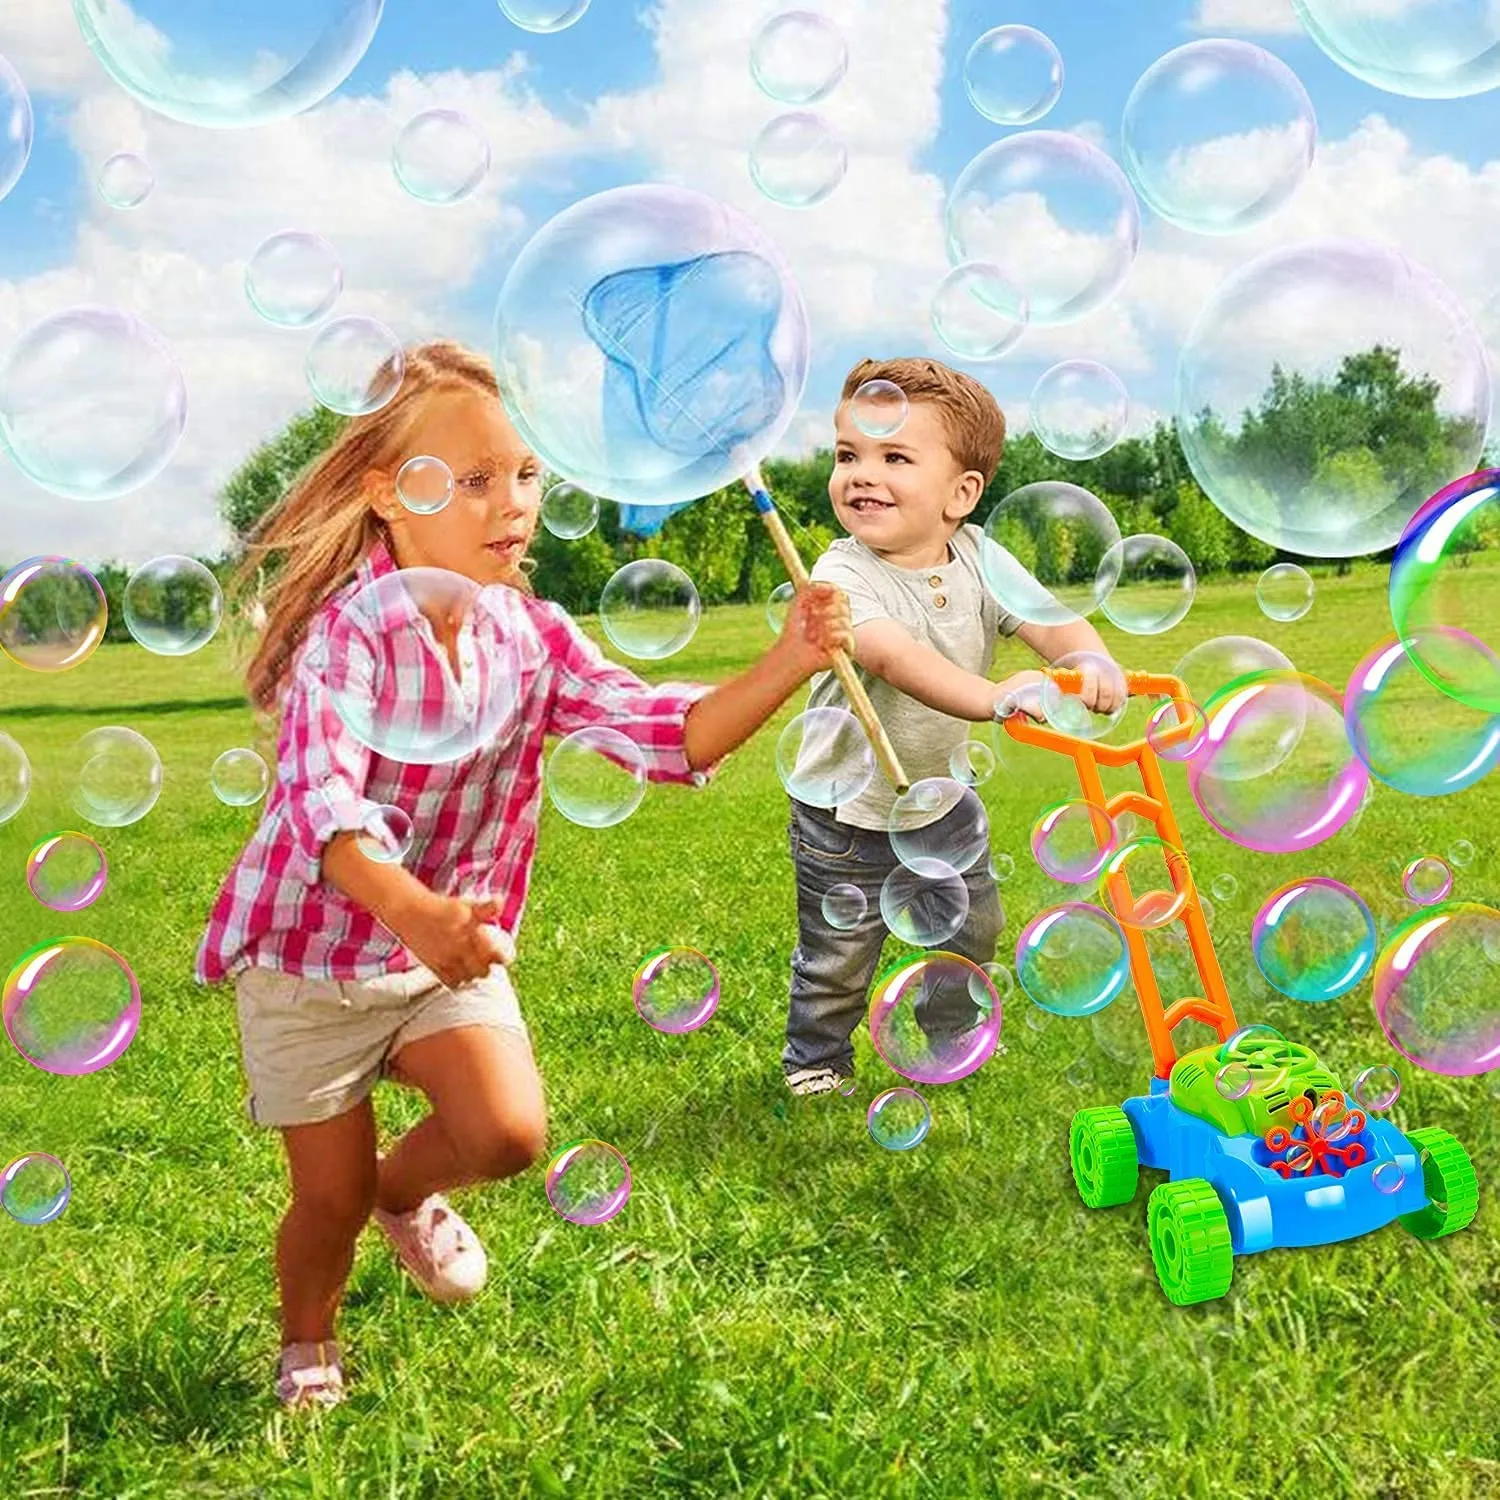 Детска музикална косачка за бутане със сапунени балони | Iguana.bg 21